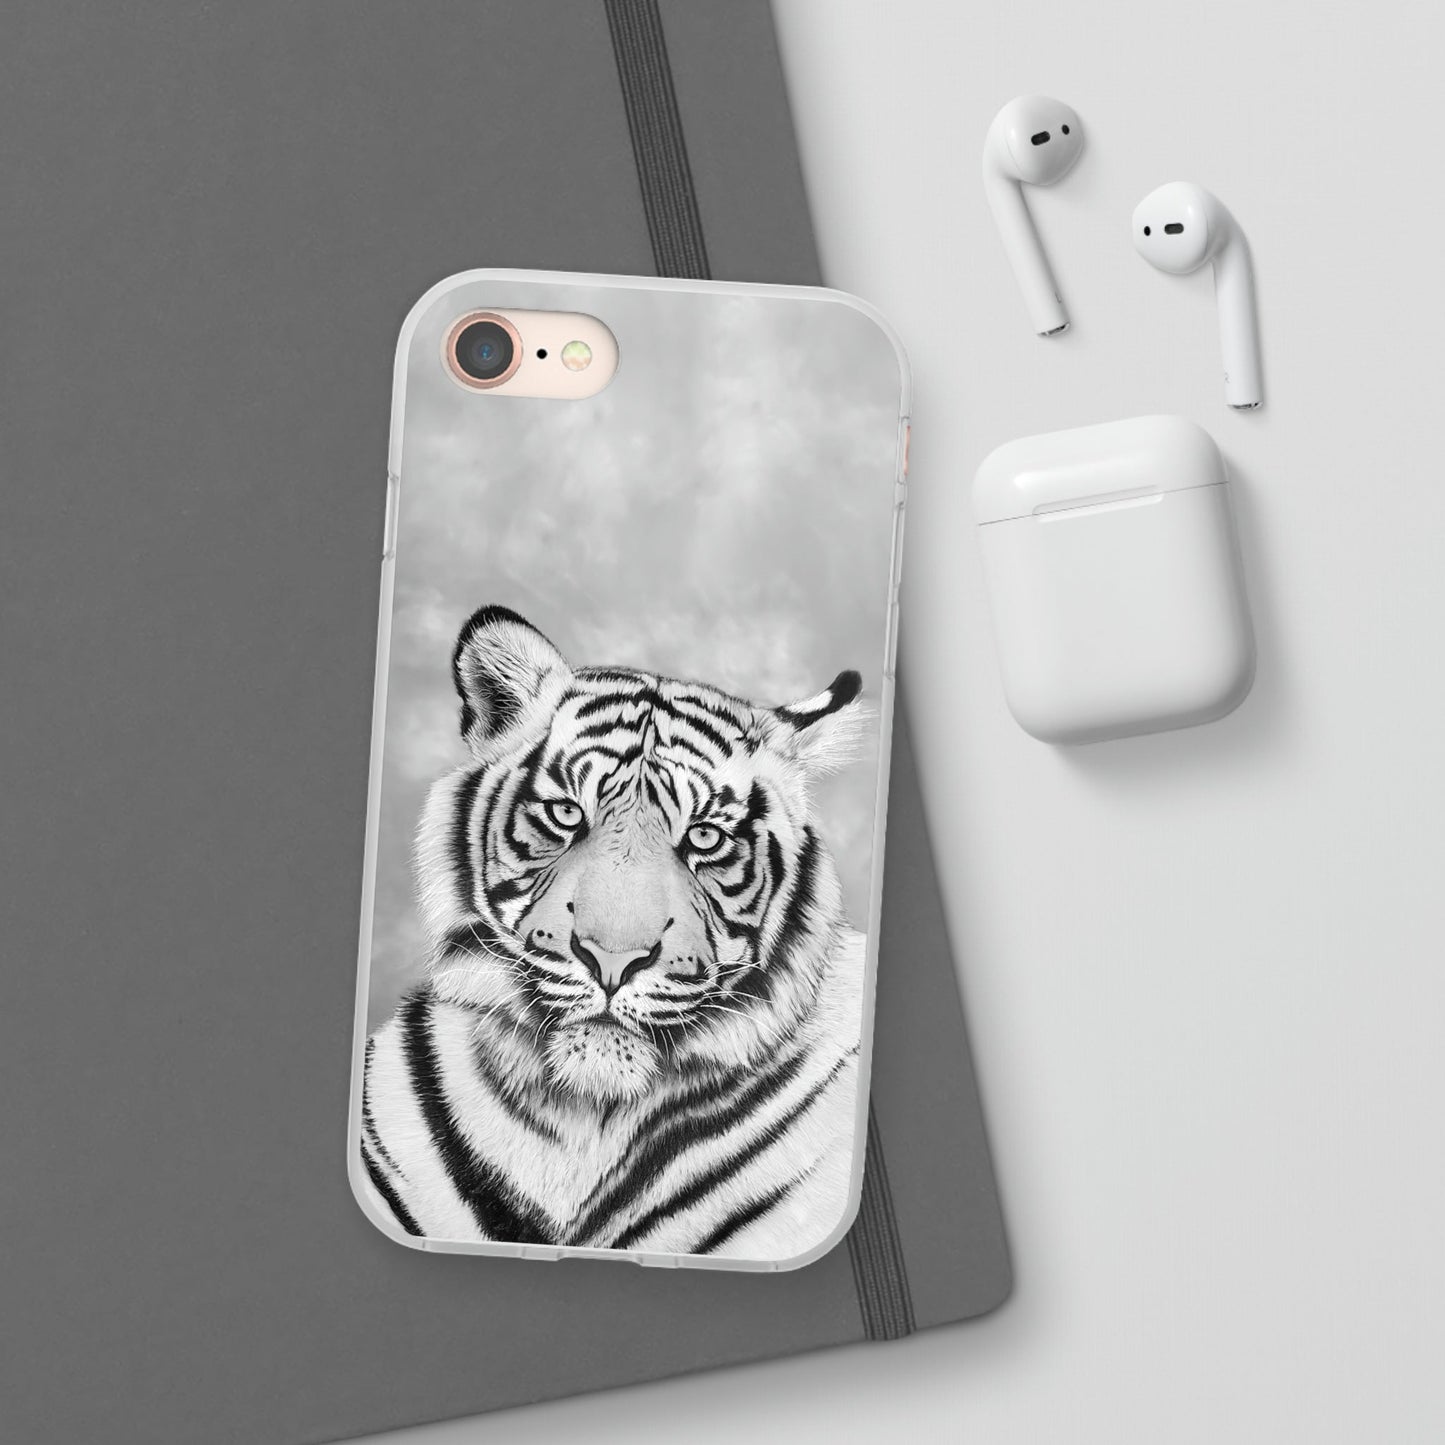 Flexi Cases - "Monochrome Tiger"